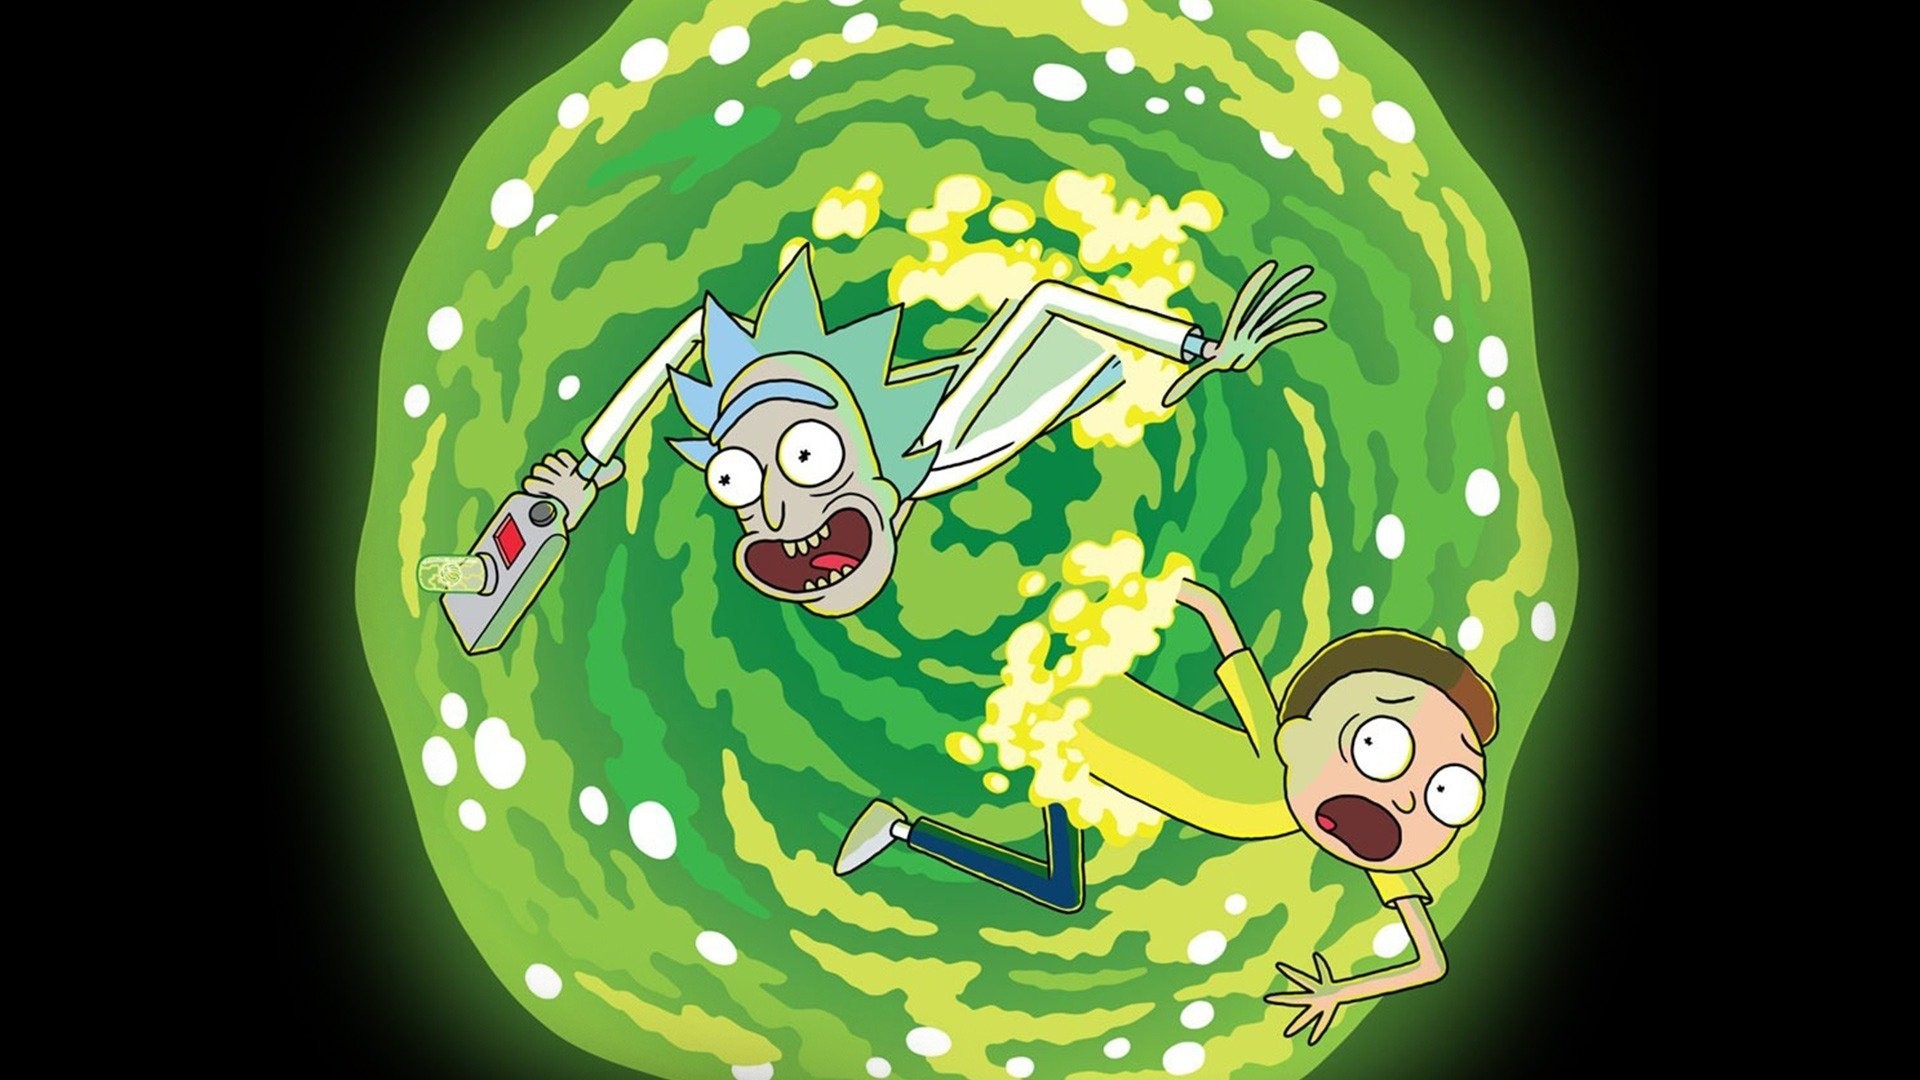 Rick and Morty Portal [1920 x 1080]